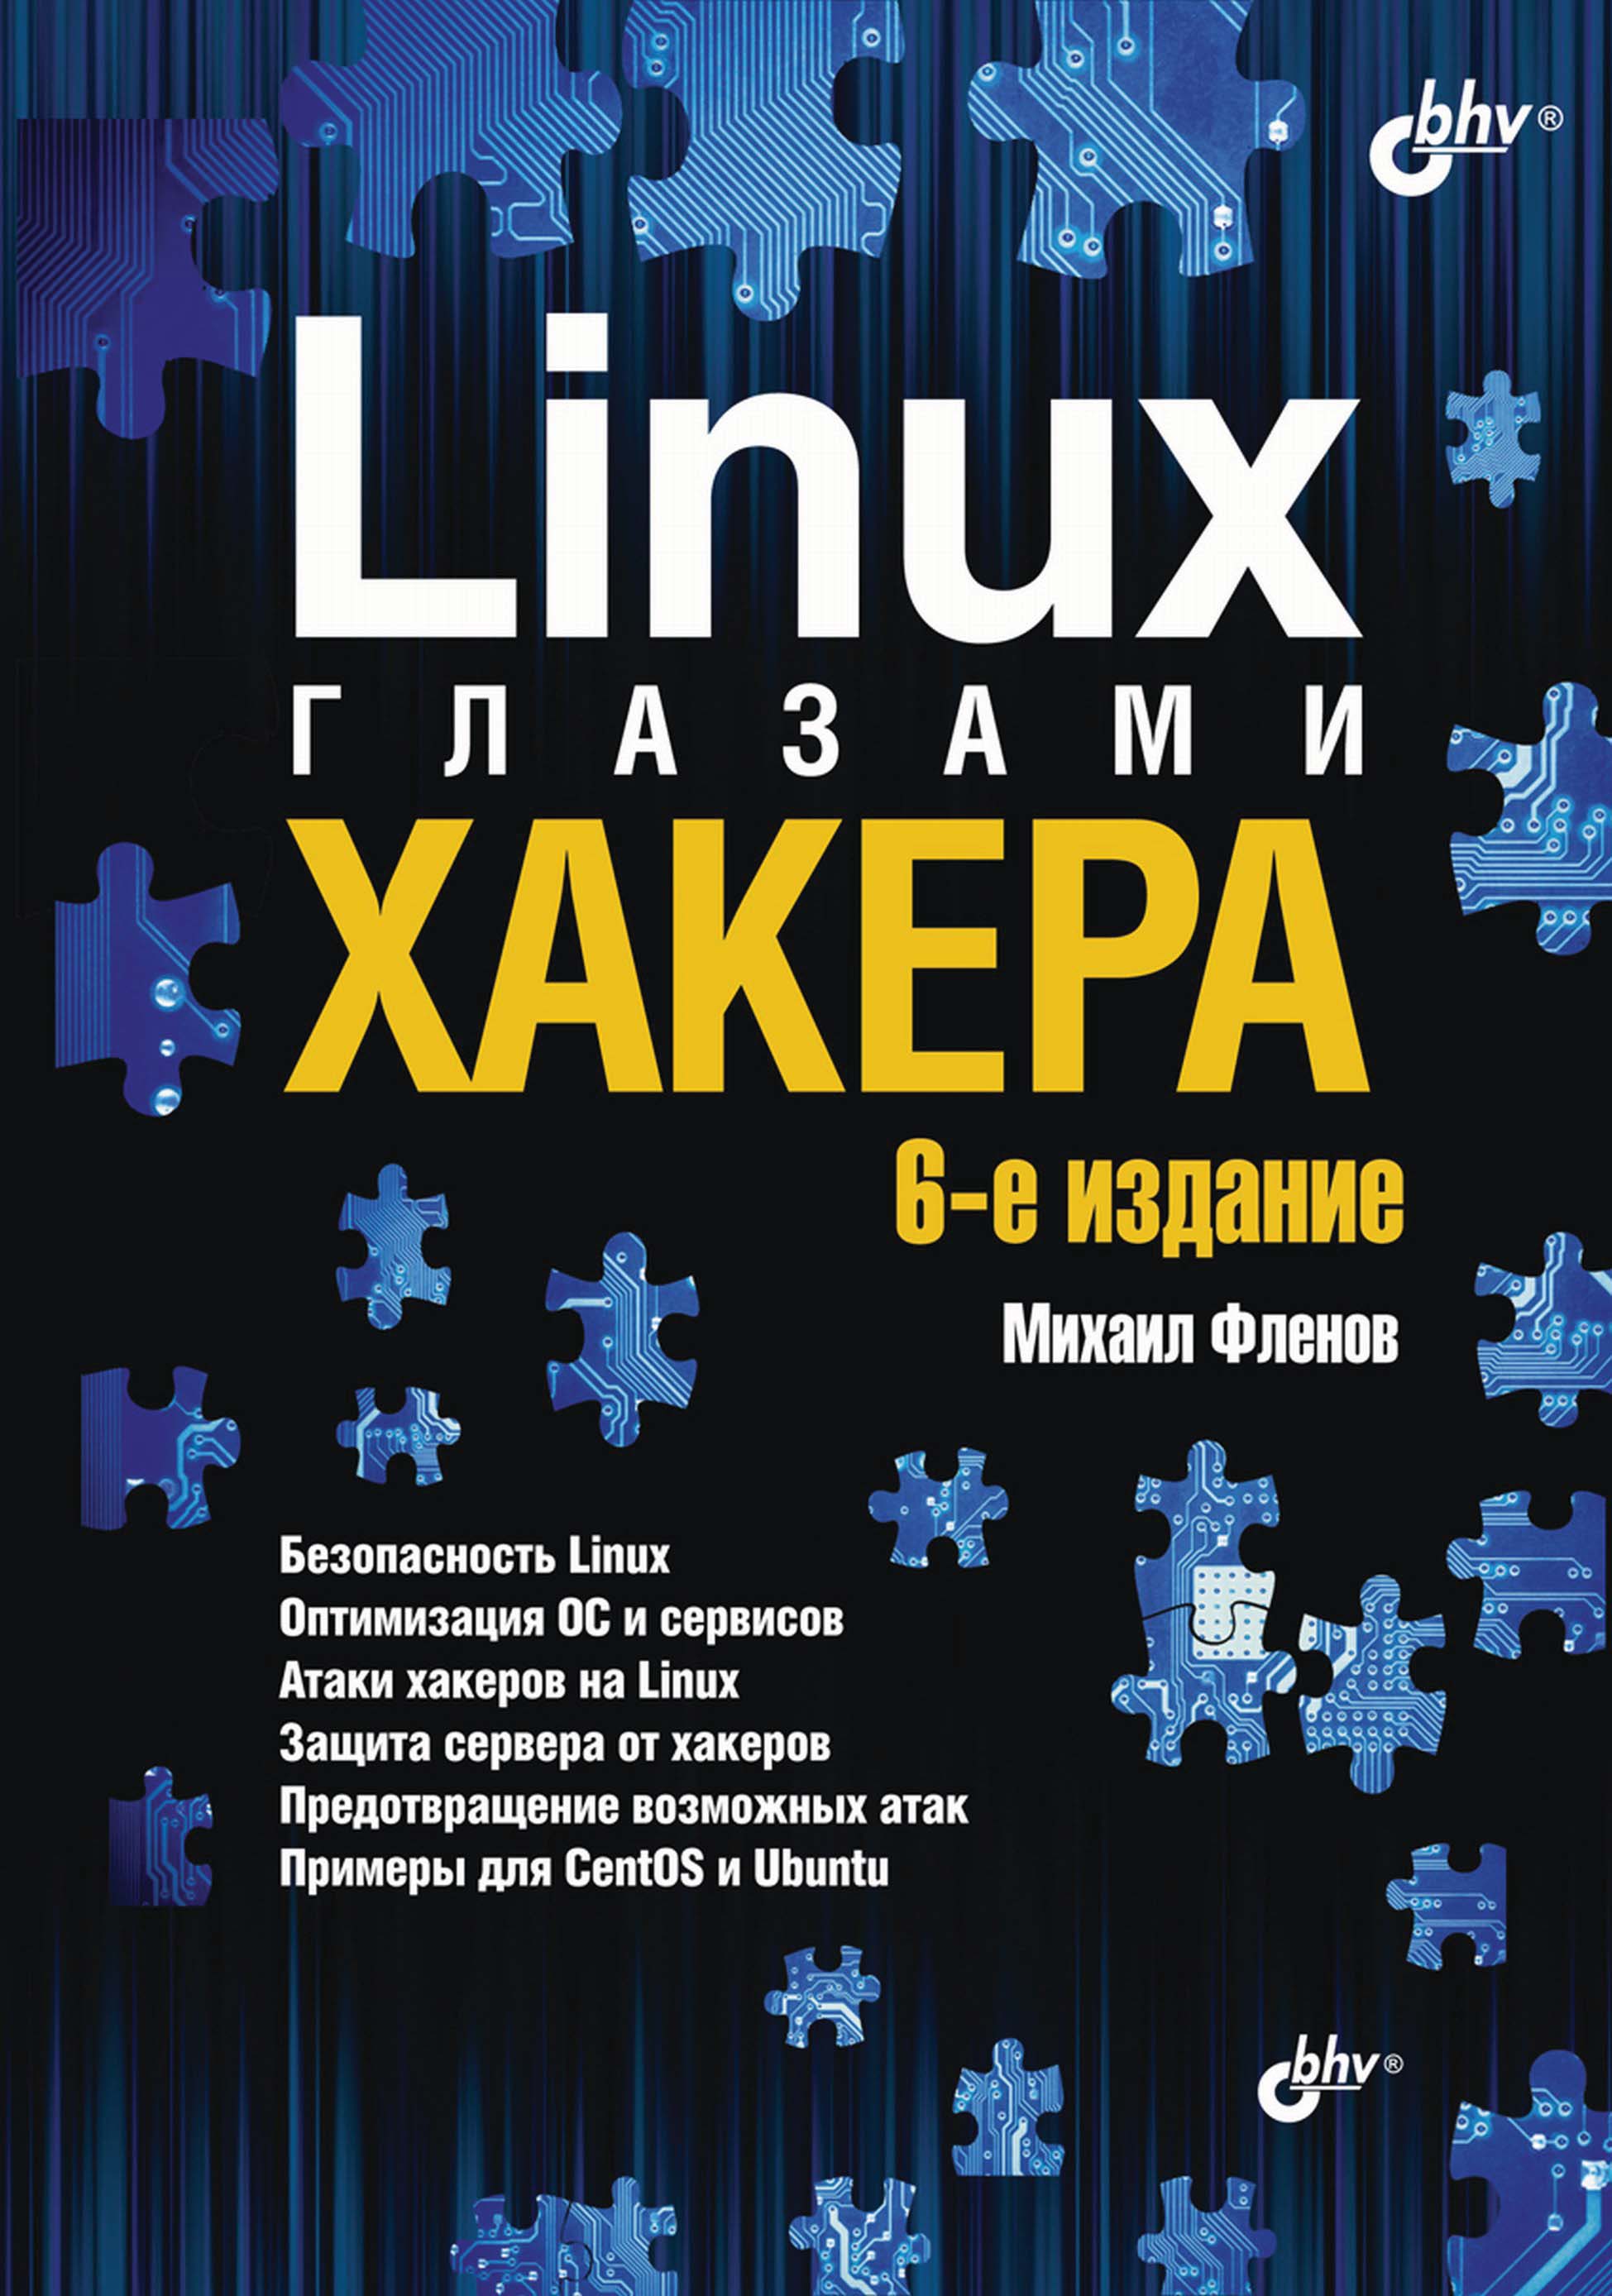 Книга Глазами хакера Linux глазами хакера созданная Михаил Фленов может относится к жанру информационная безопасность, ОС и сети, программы. Стоимость электронной книги Linux глазами хакера с идентификатором 4986849 составляет 520.00 руб.